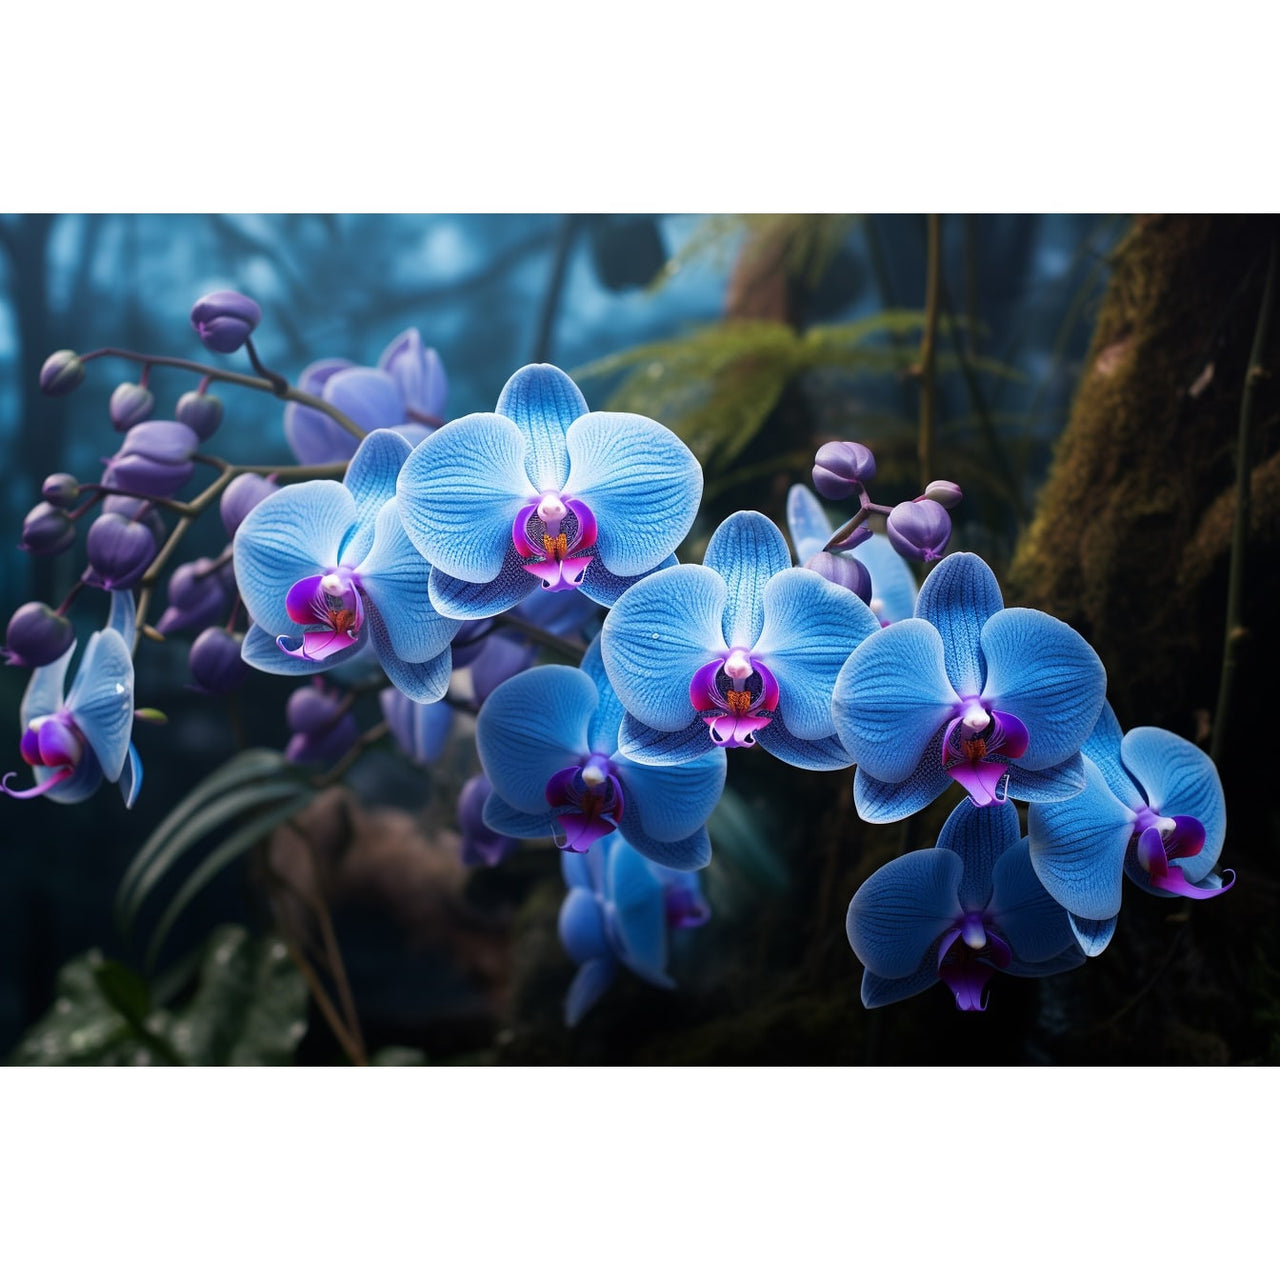 Tableau Moderne Avec Orchidées